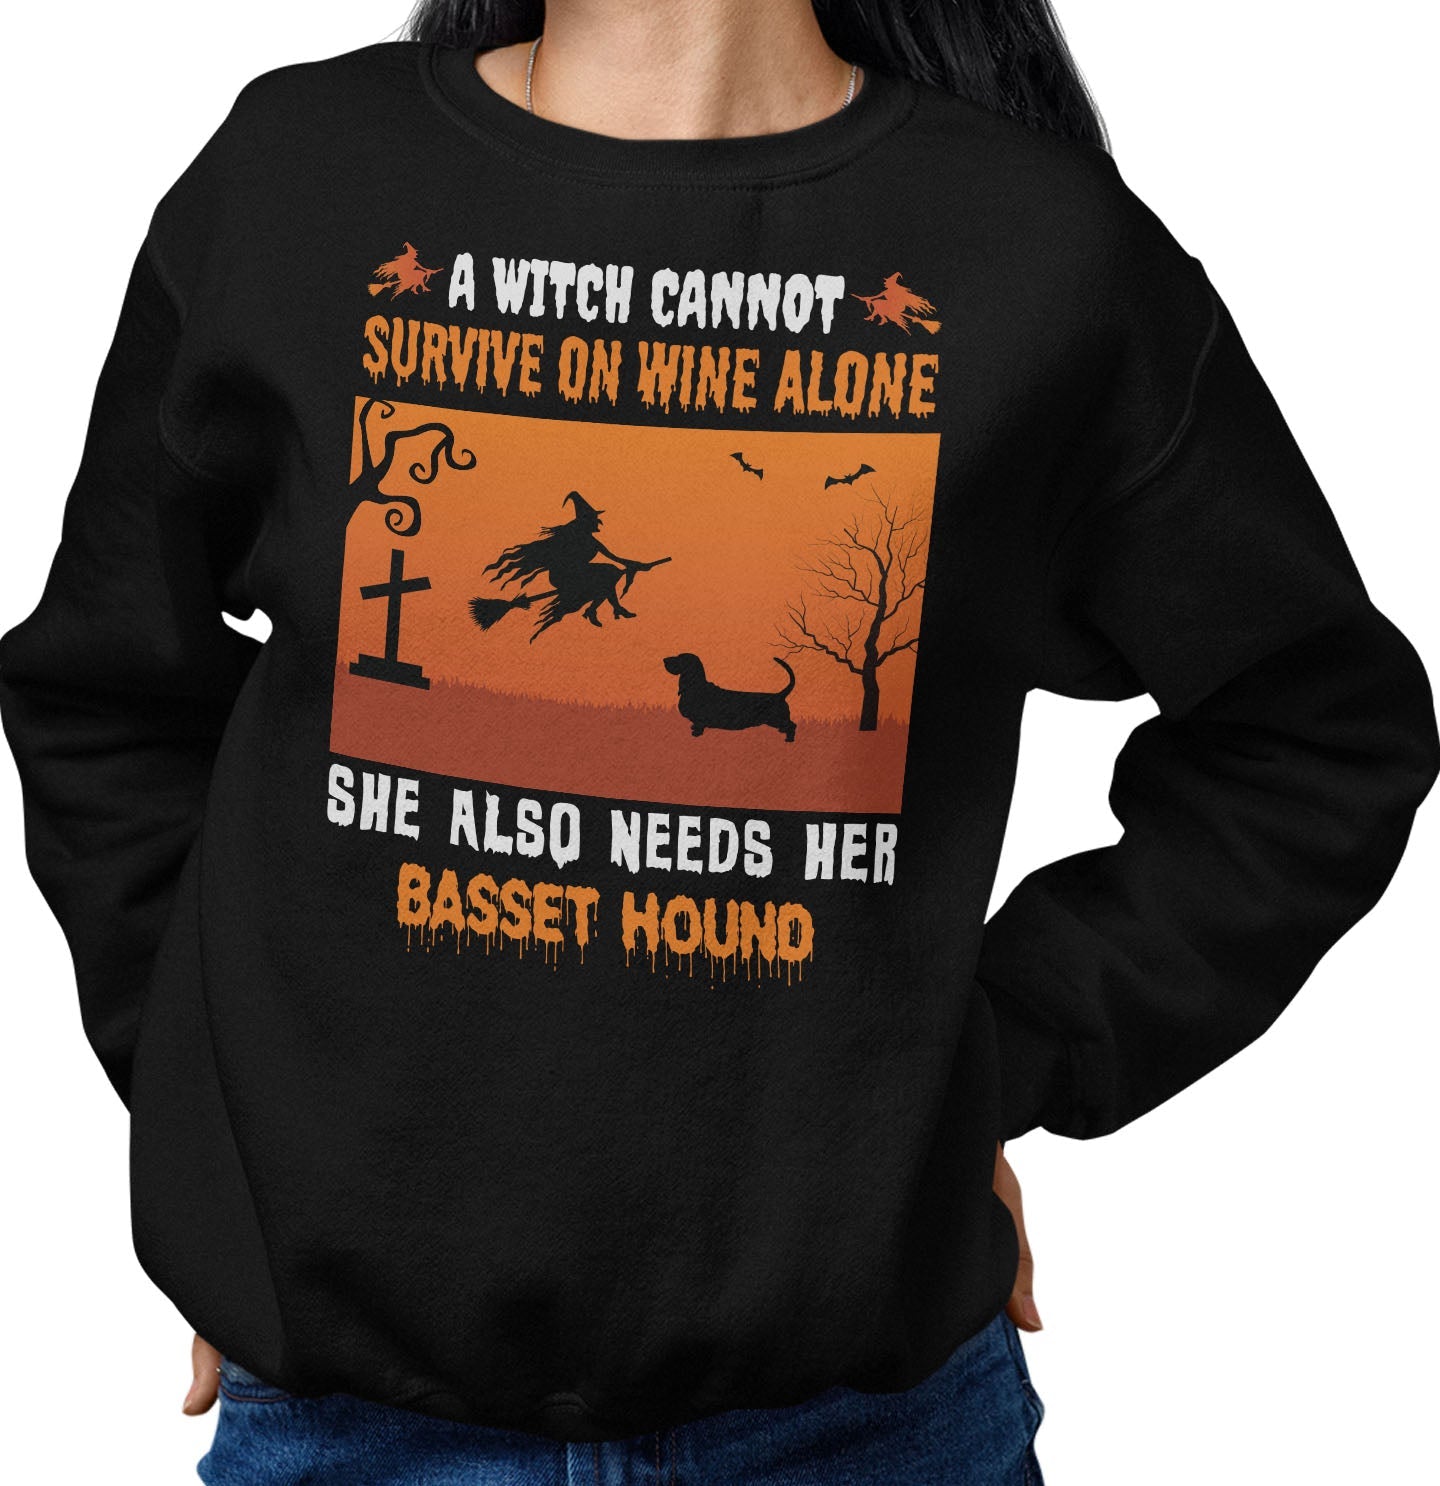 A Witch Needs Her Basset Hound - Adult Unisex Crewneck Sweatshirt